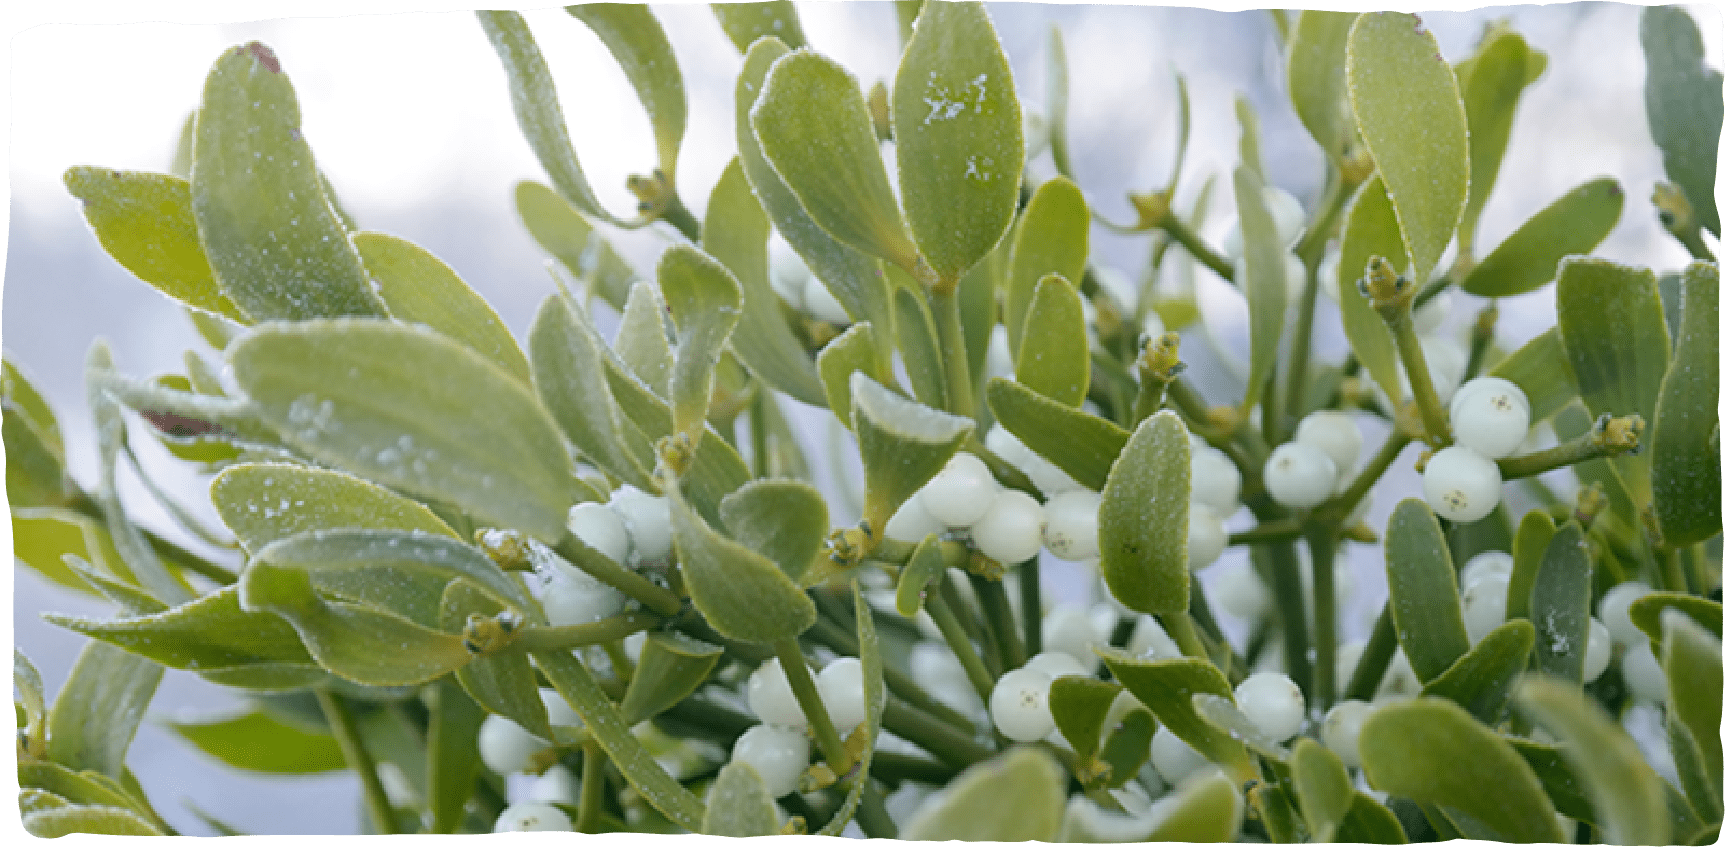 Mit Frost bedeckte Mistelzweige mit frischen weißen Beeren